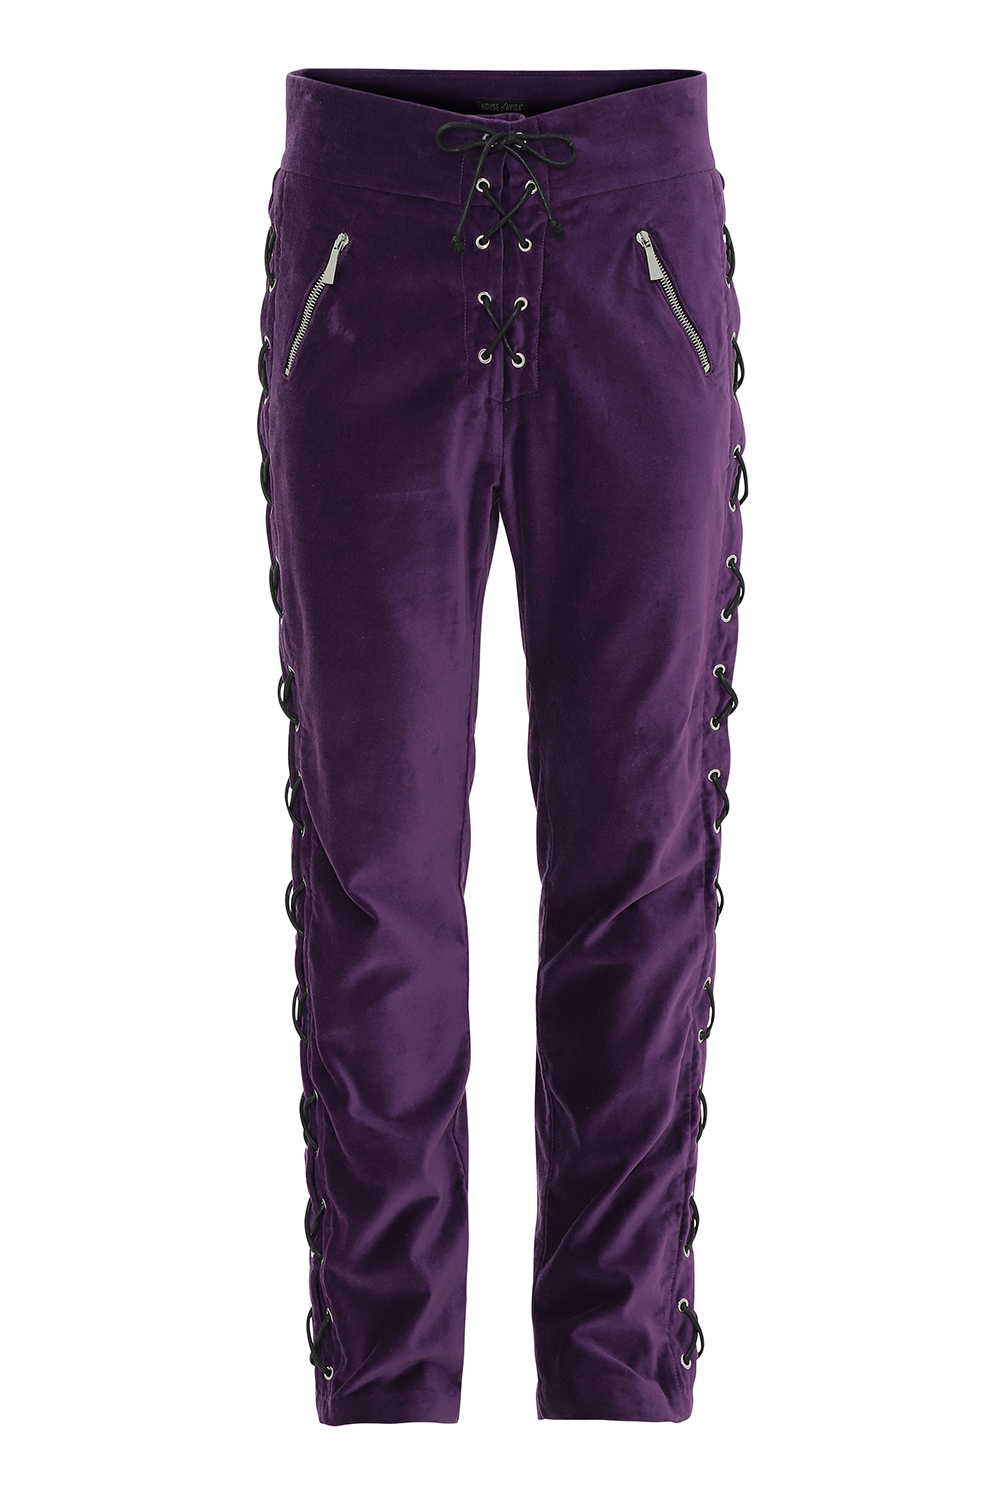 purple velvet jeans